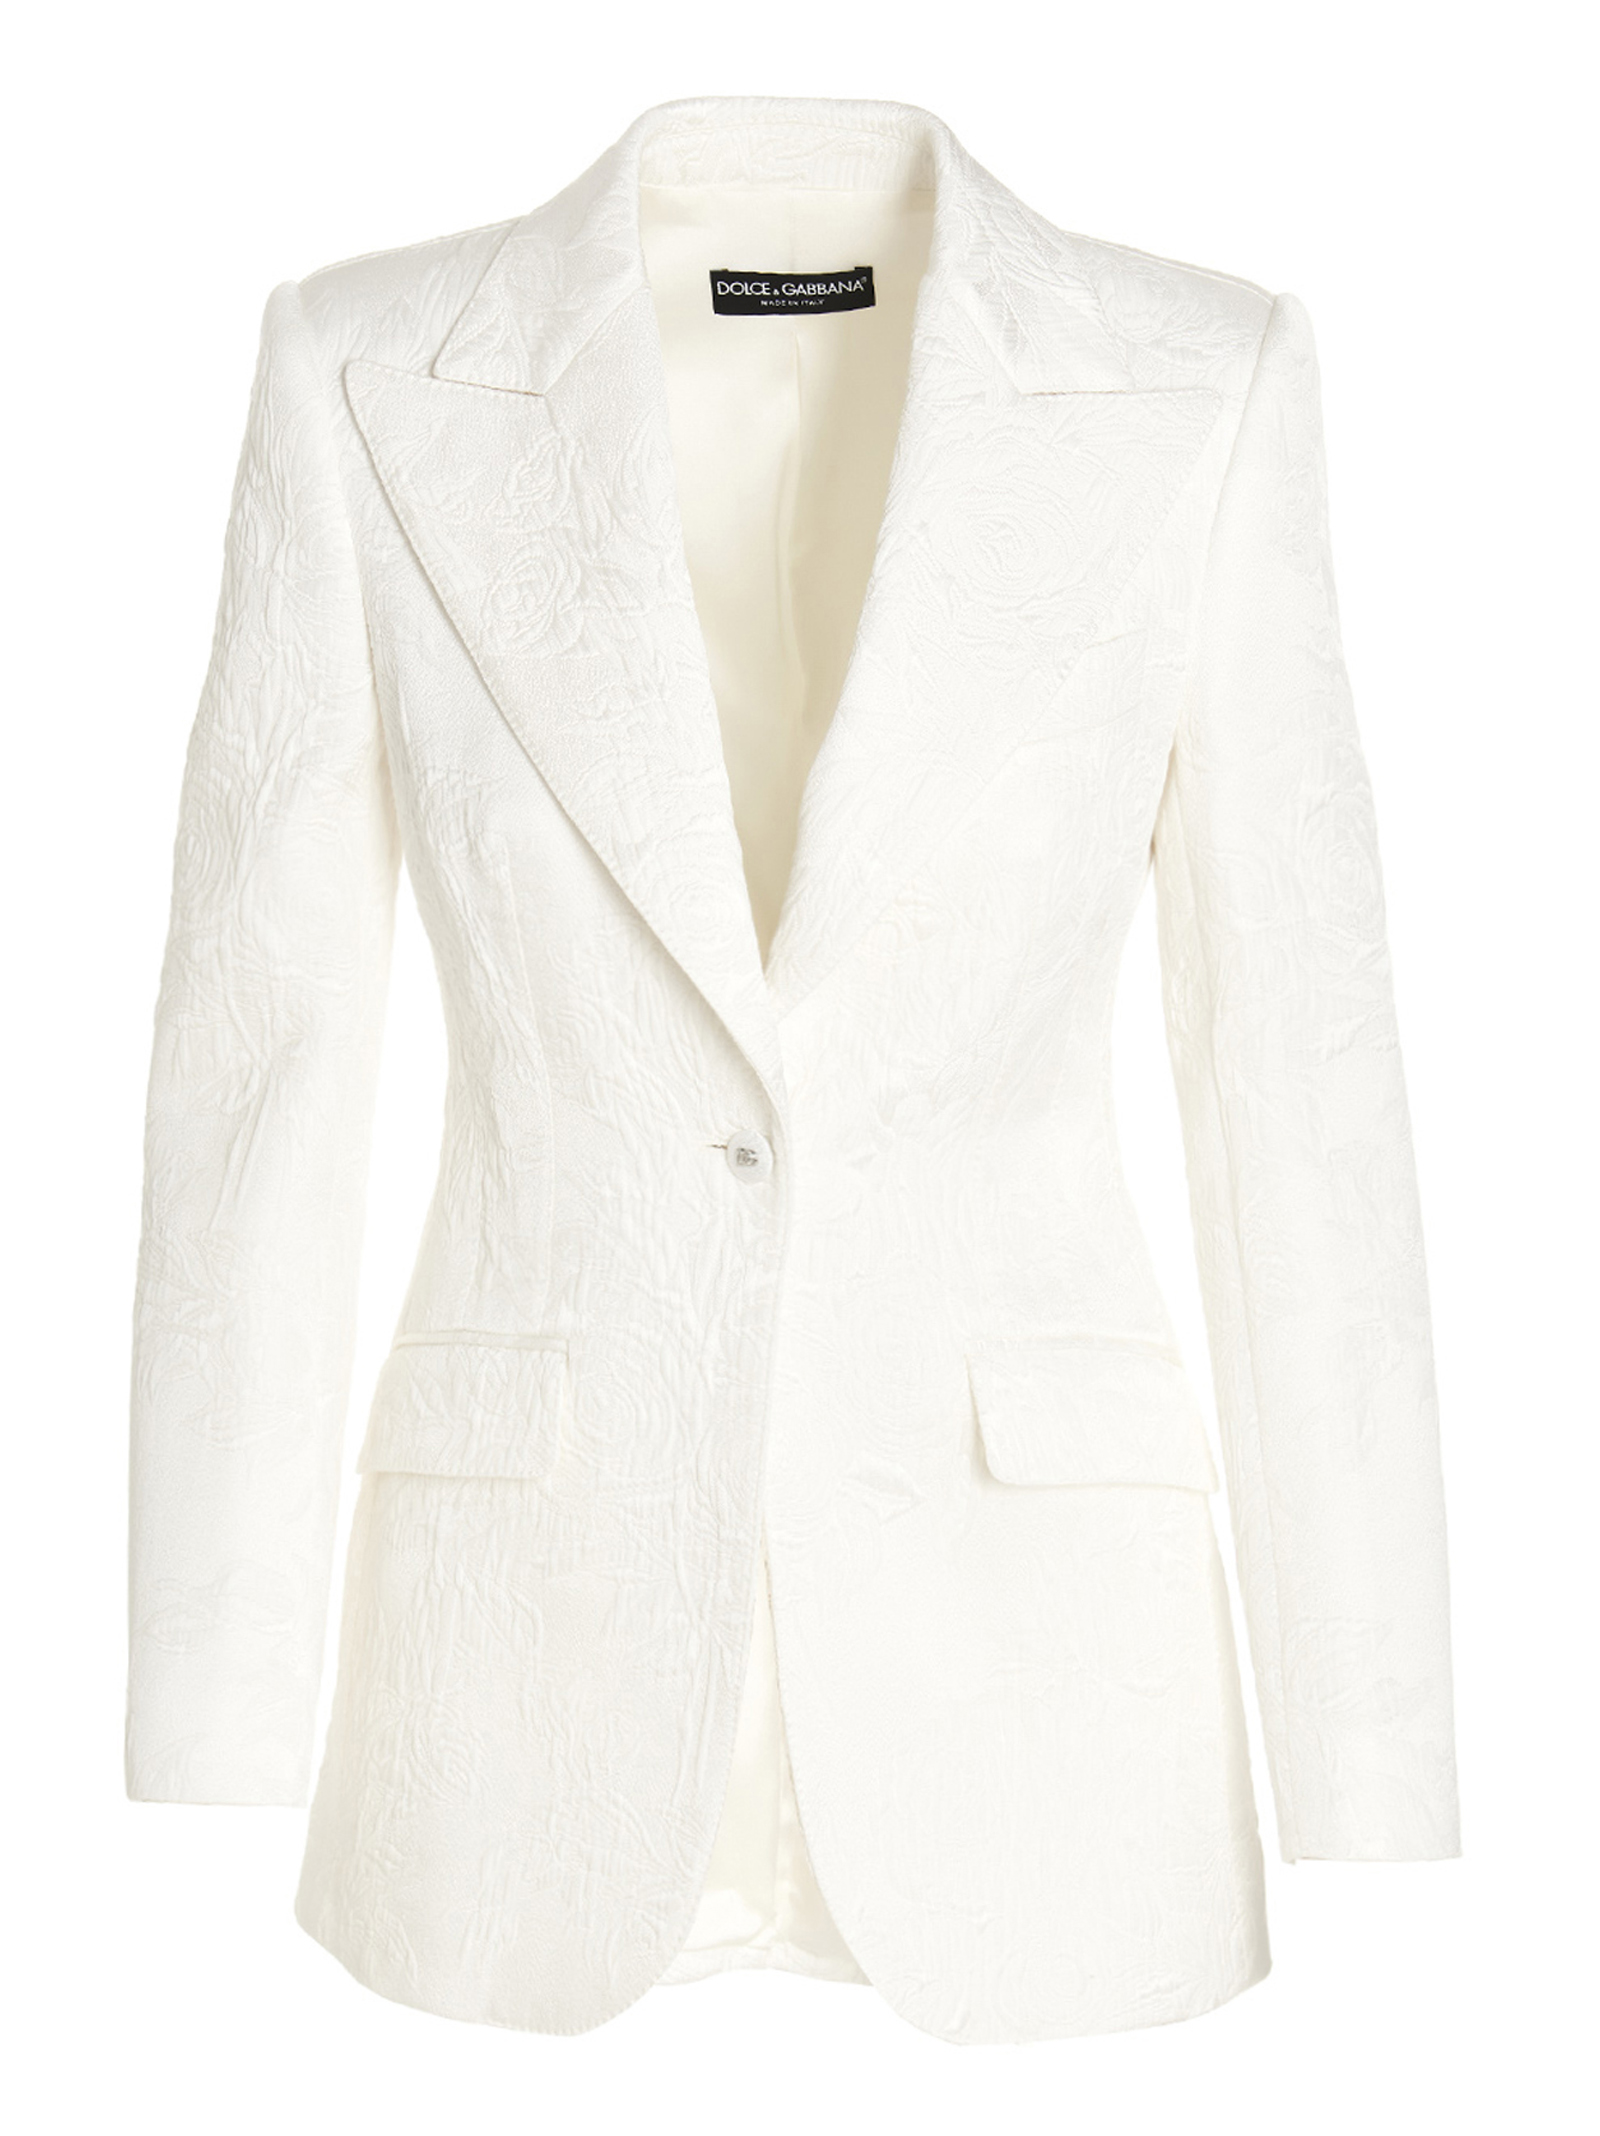 Vestes Pour Femme - Dolce & Gabbana - En Cotton White - Taille:  -